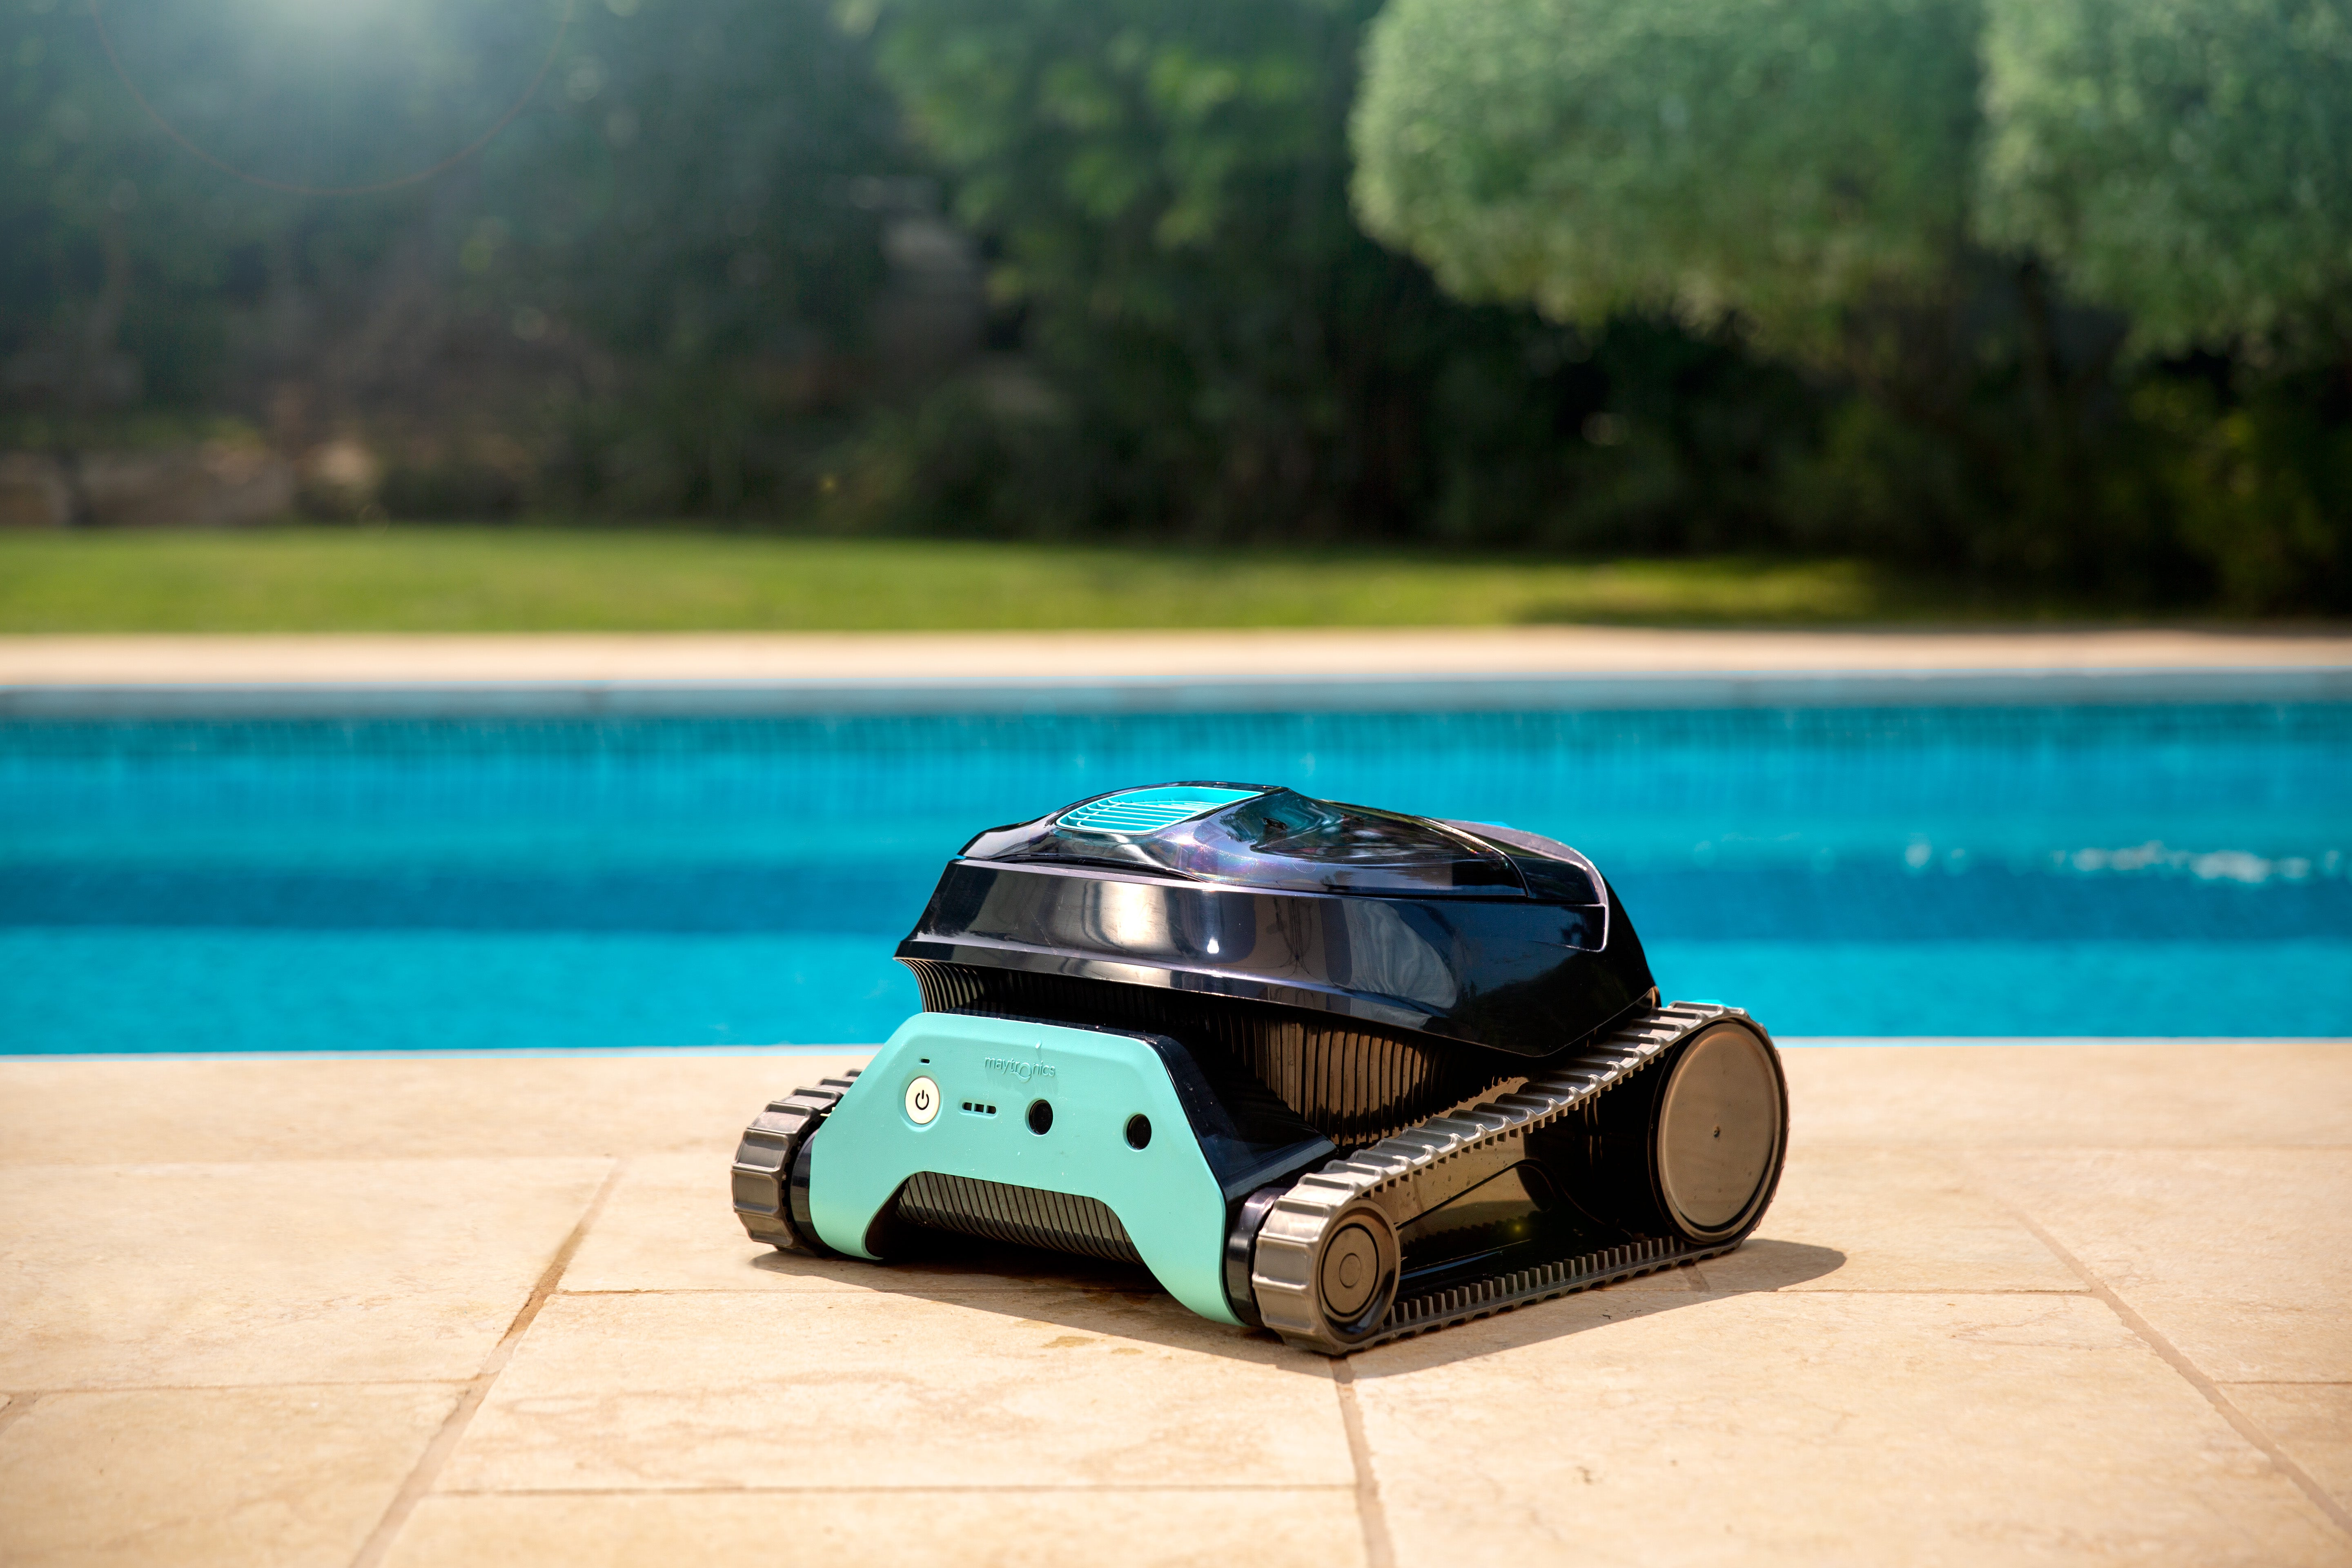 Los 10 mejores robots limpiafondos de piscina del 2021